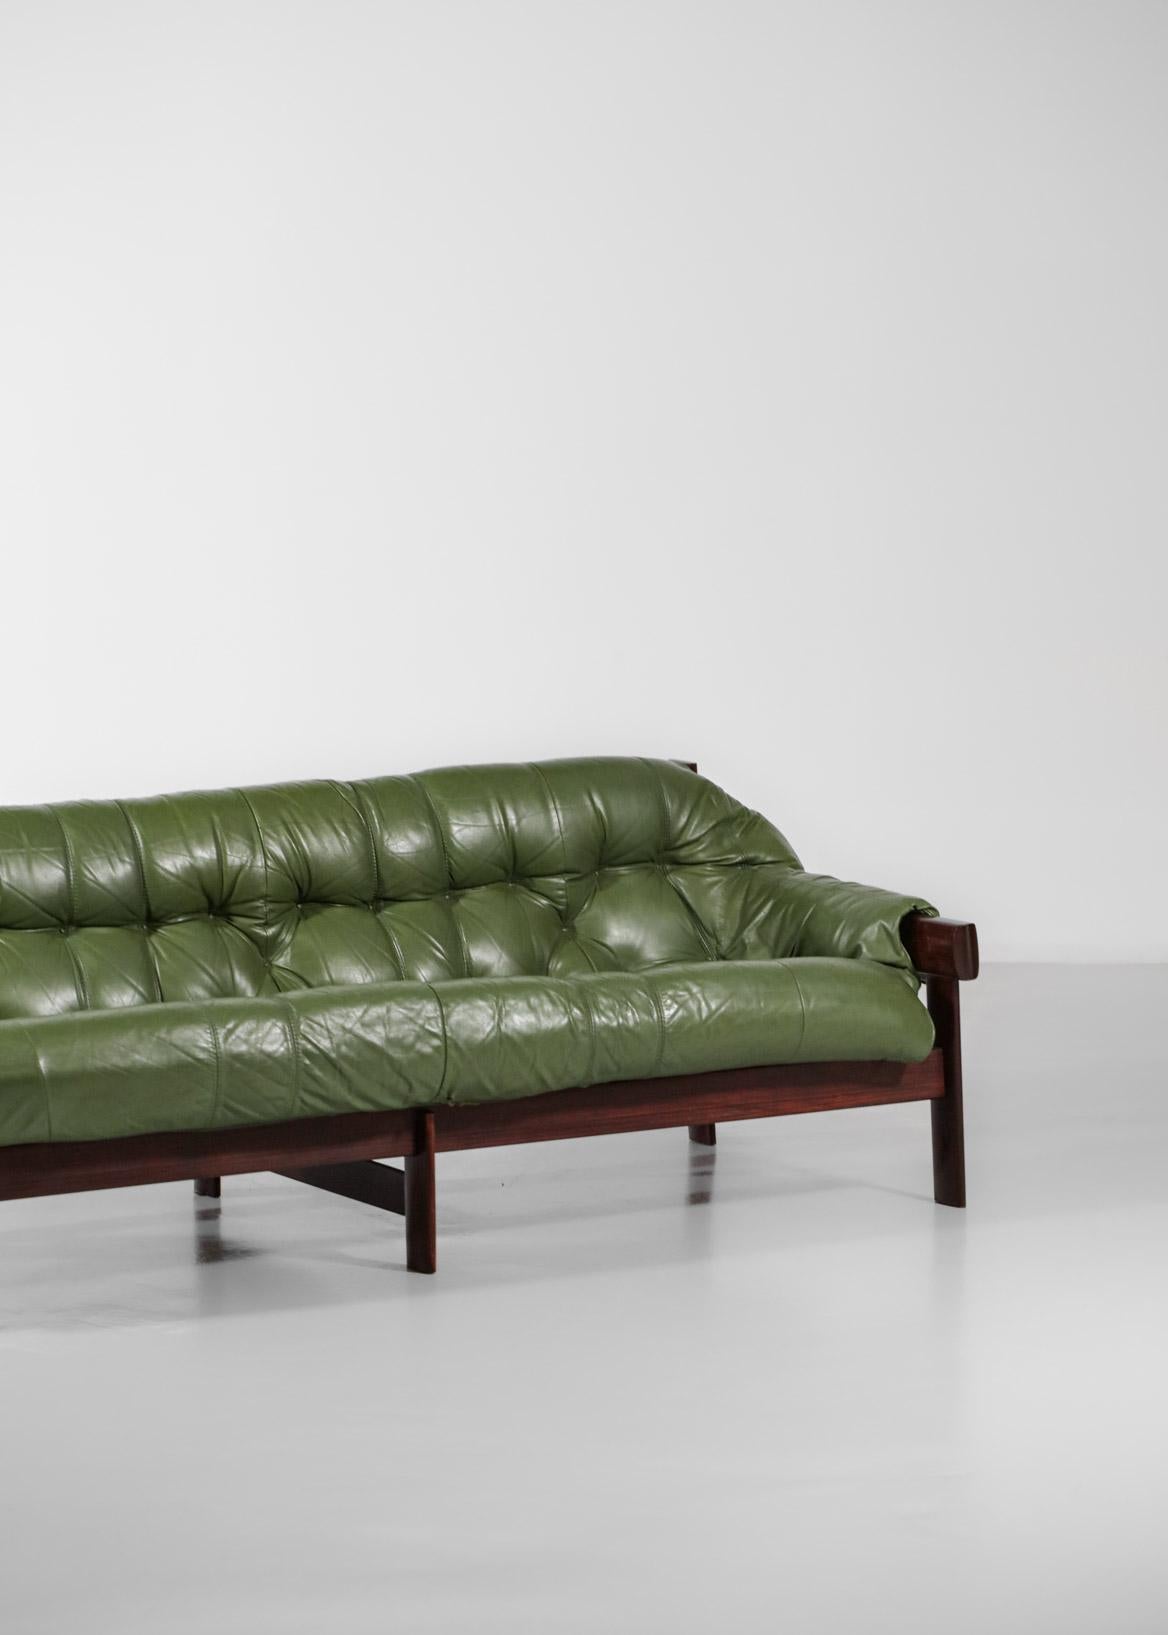 Three-Seater Sofa by Brazilian Designer Percival Lafer Design Leather 2